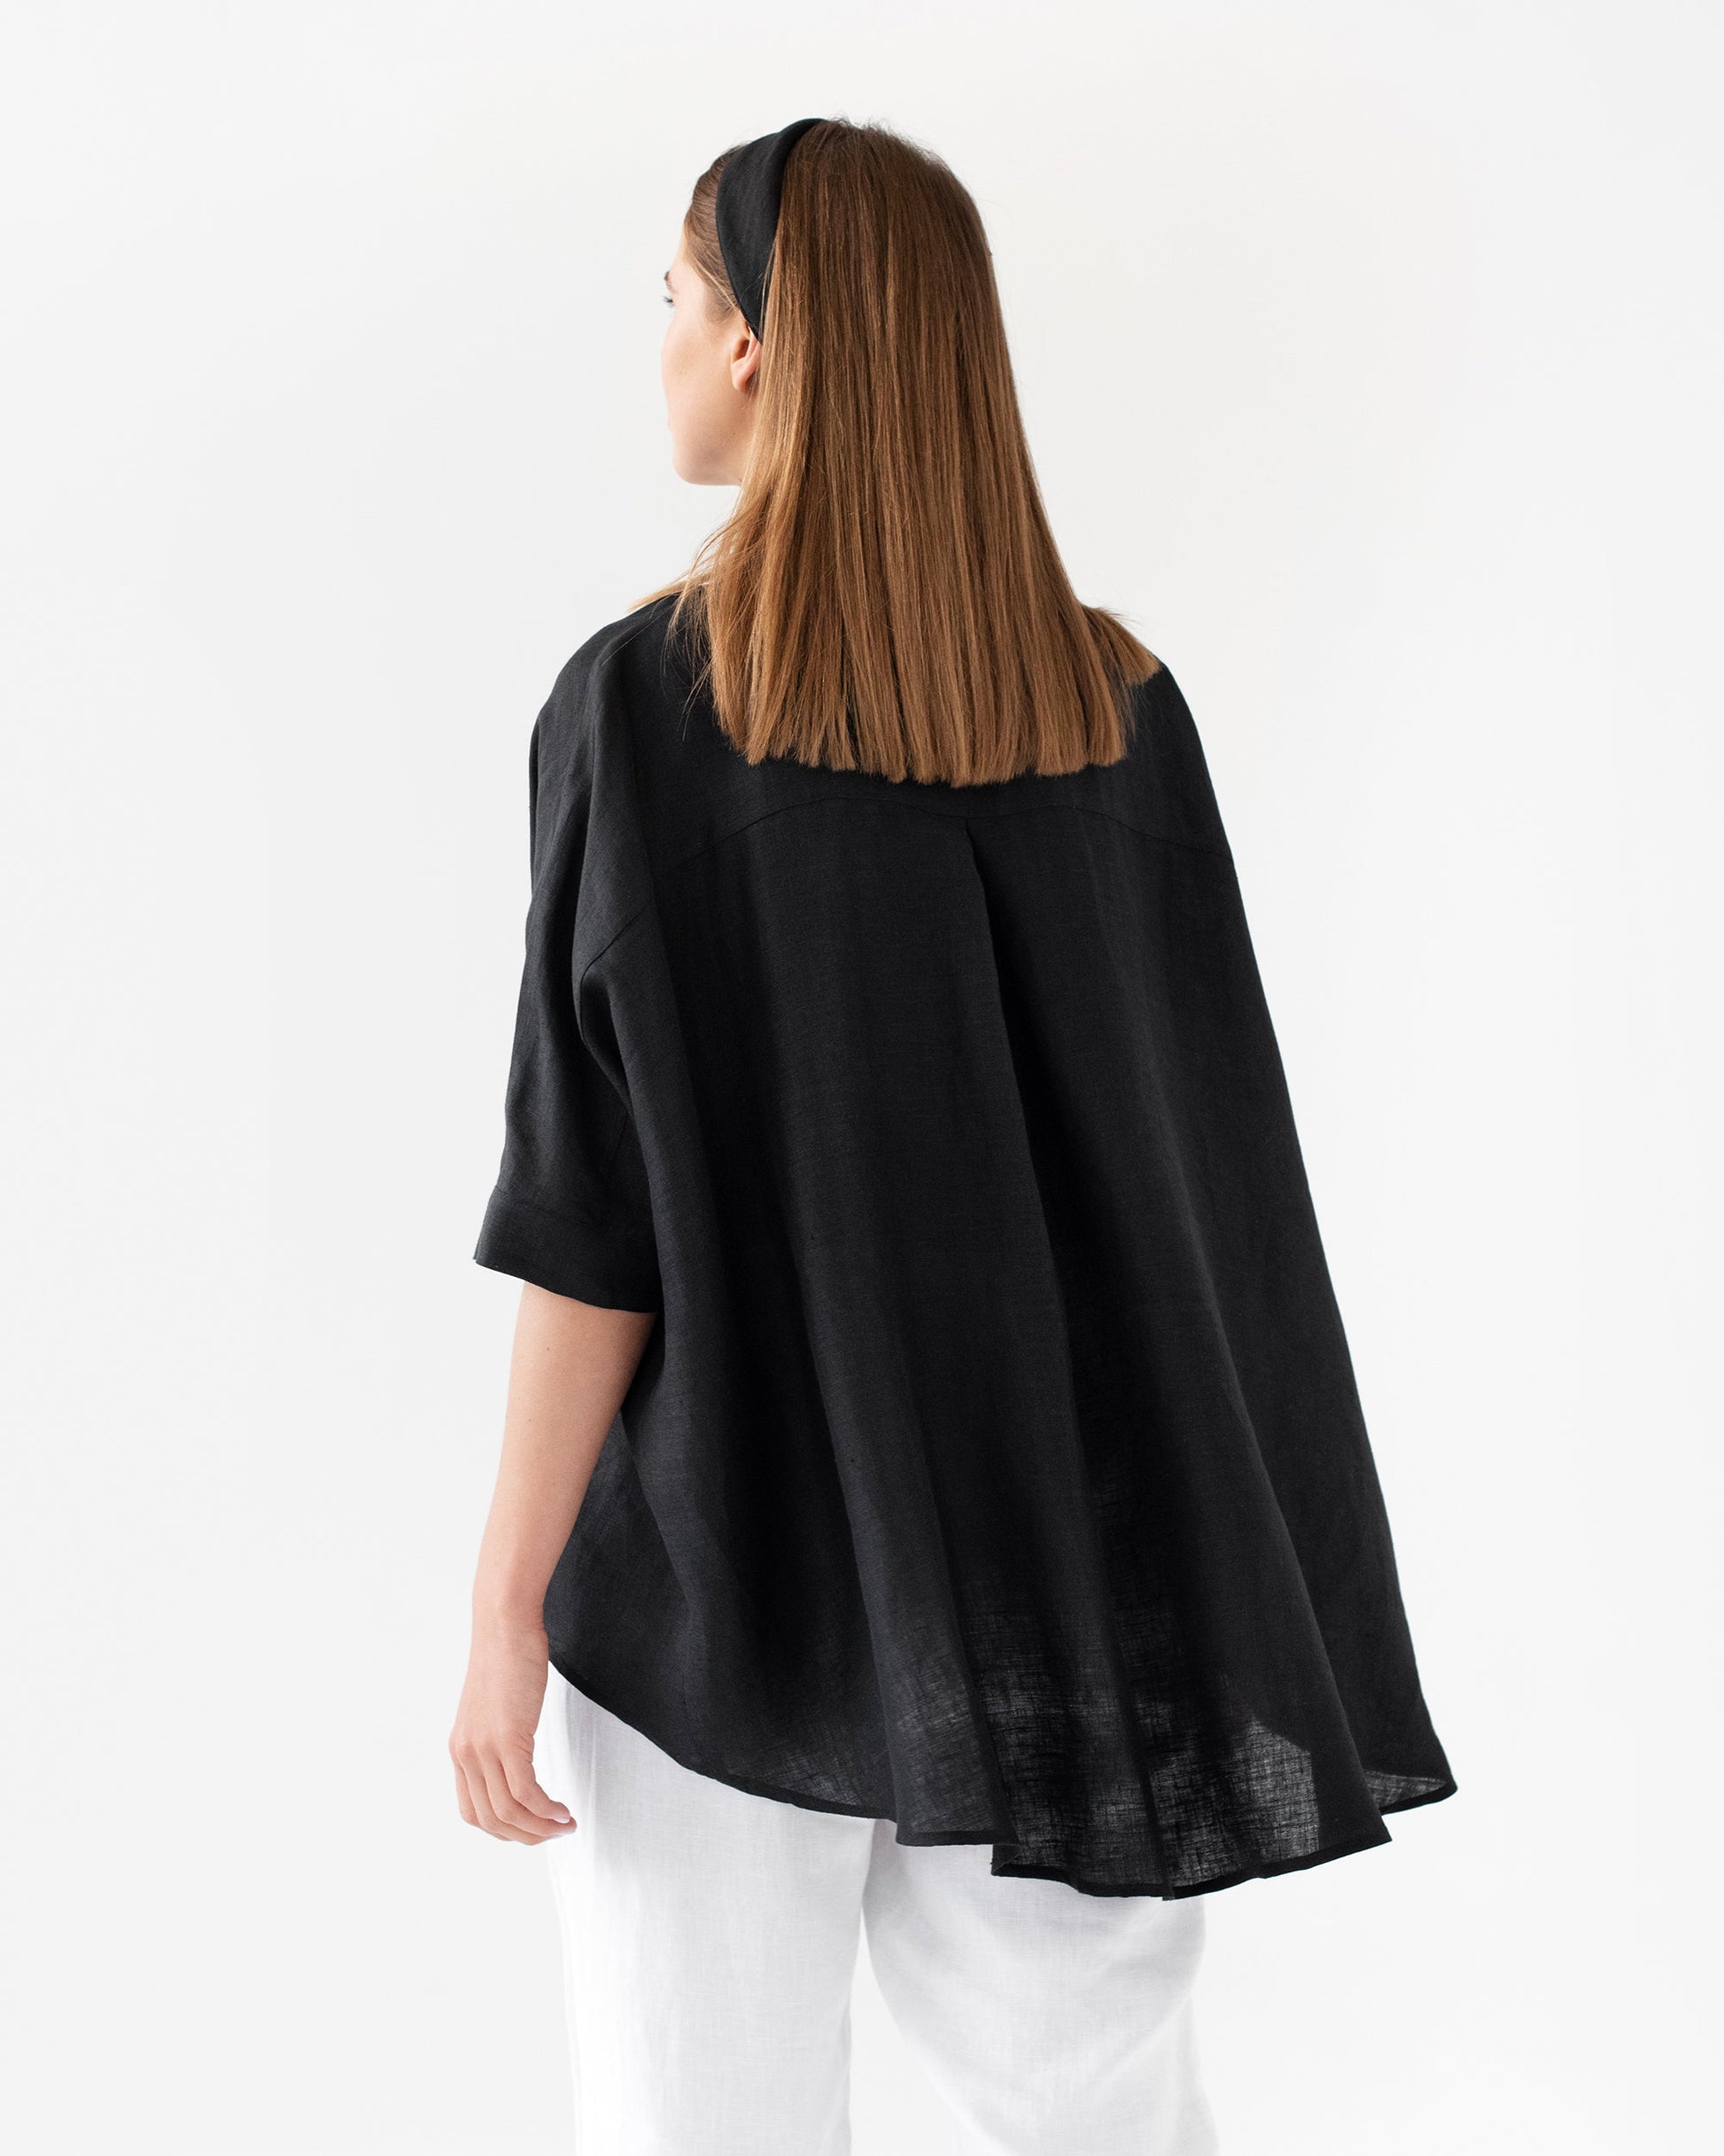 Lightweight linen shirt HANA in black - MagicLinen